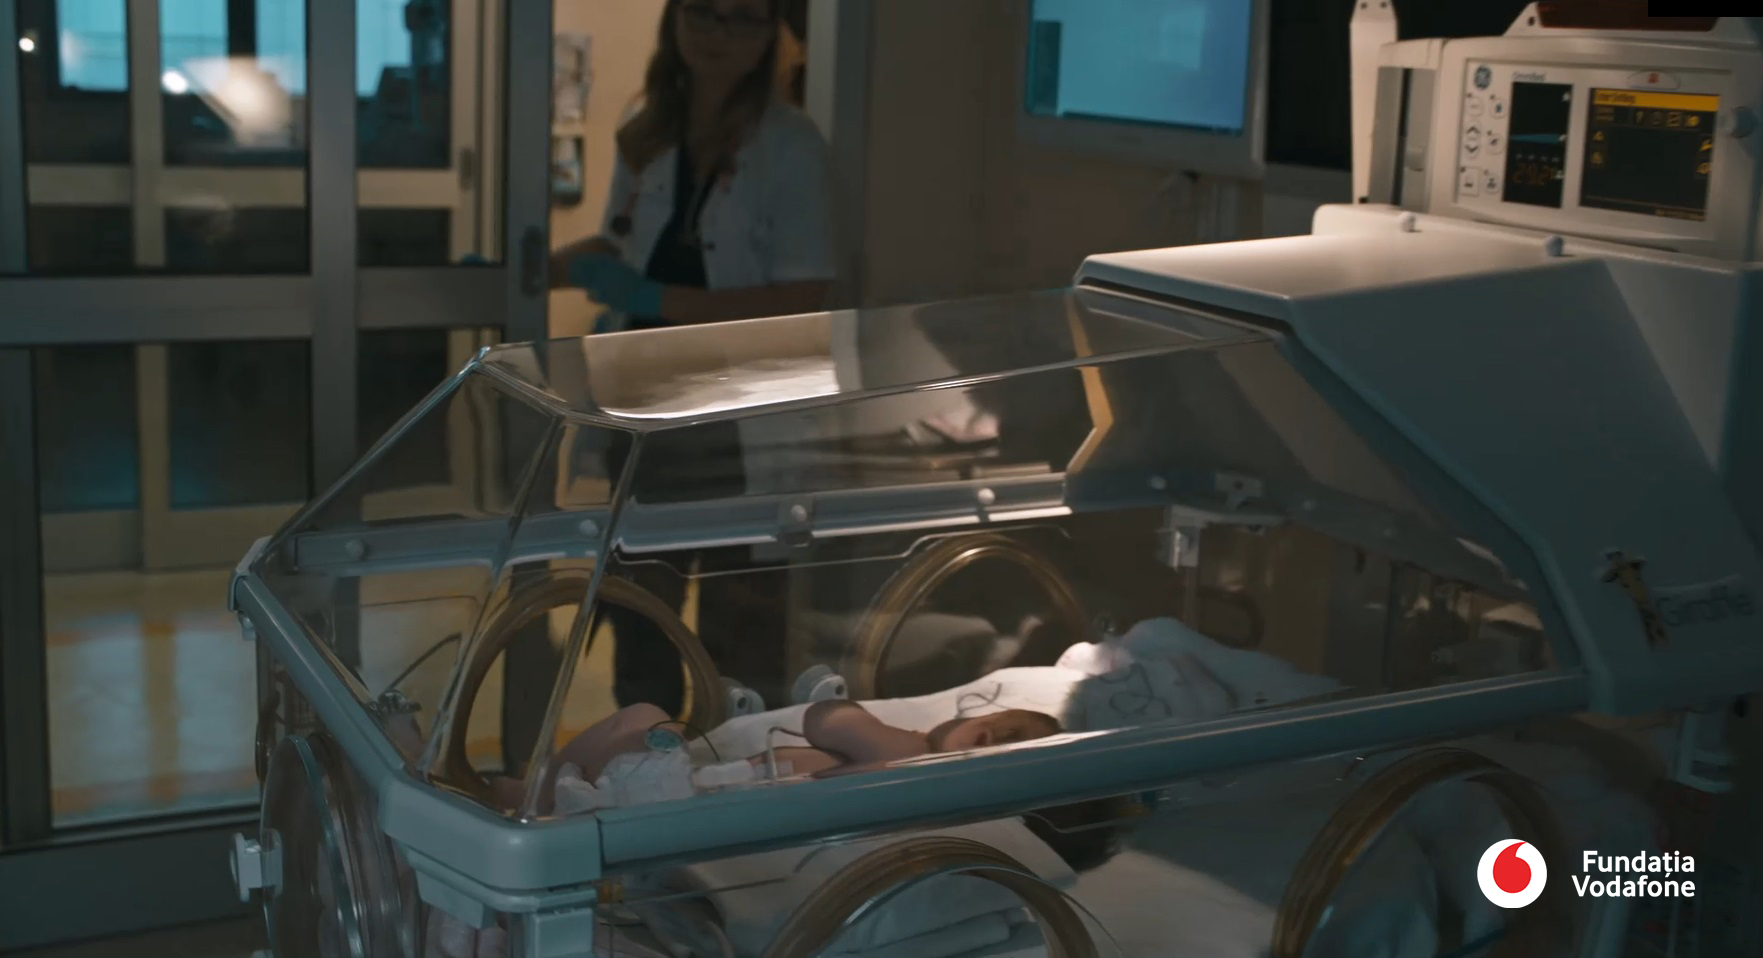 Fundația Vodafone dotează cu tehnologie medicală 21 de secții de neonatologie și terapie intensivă neonatală